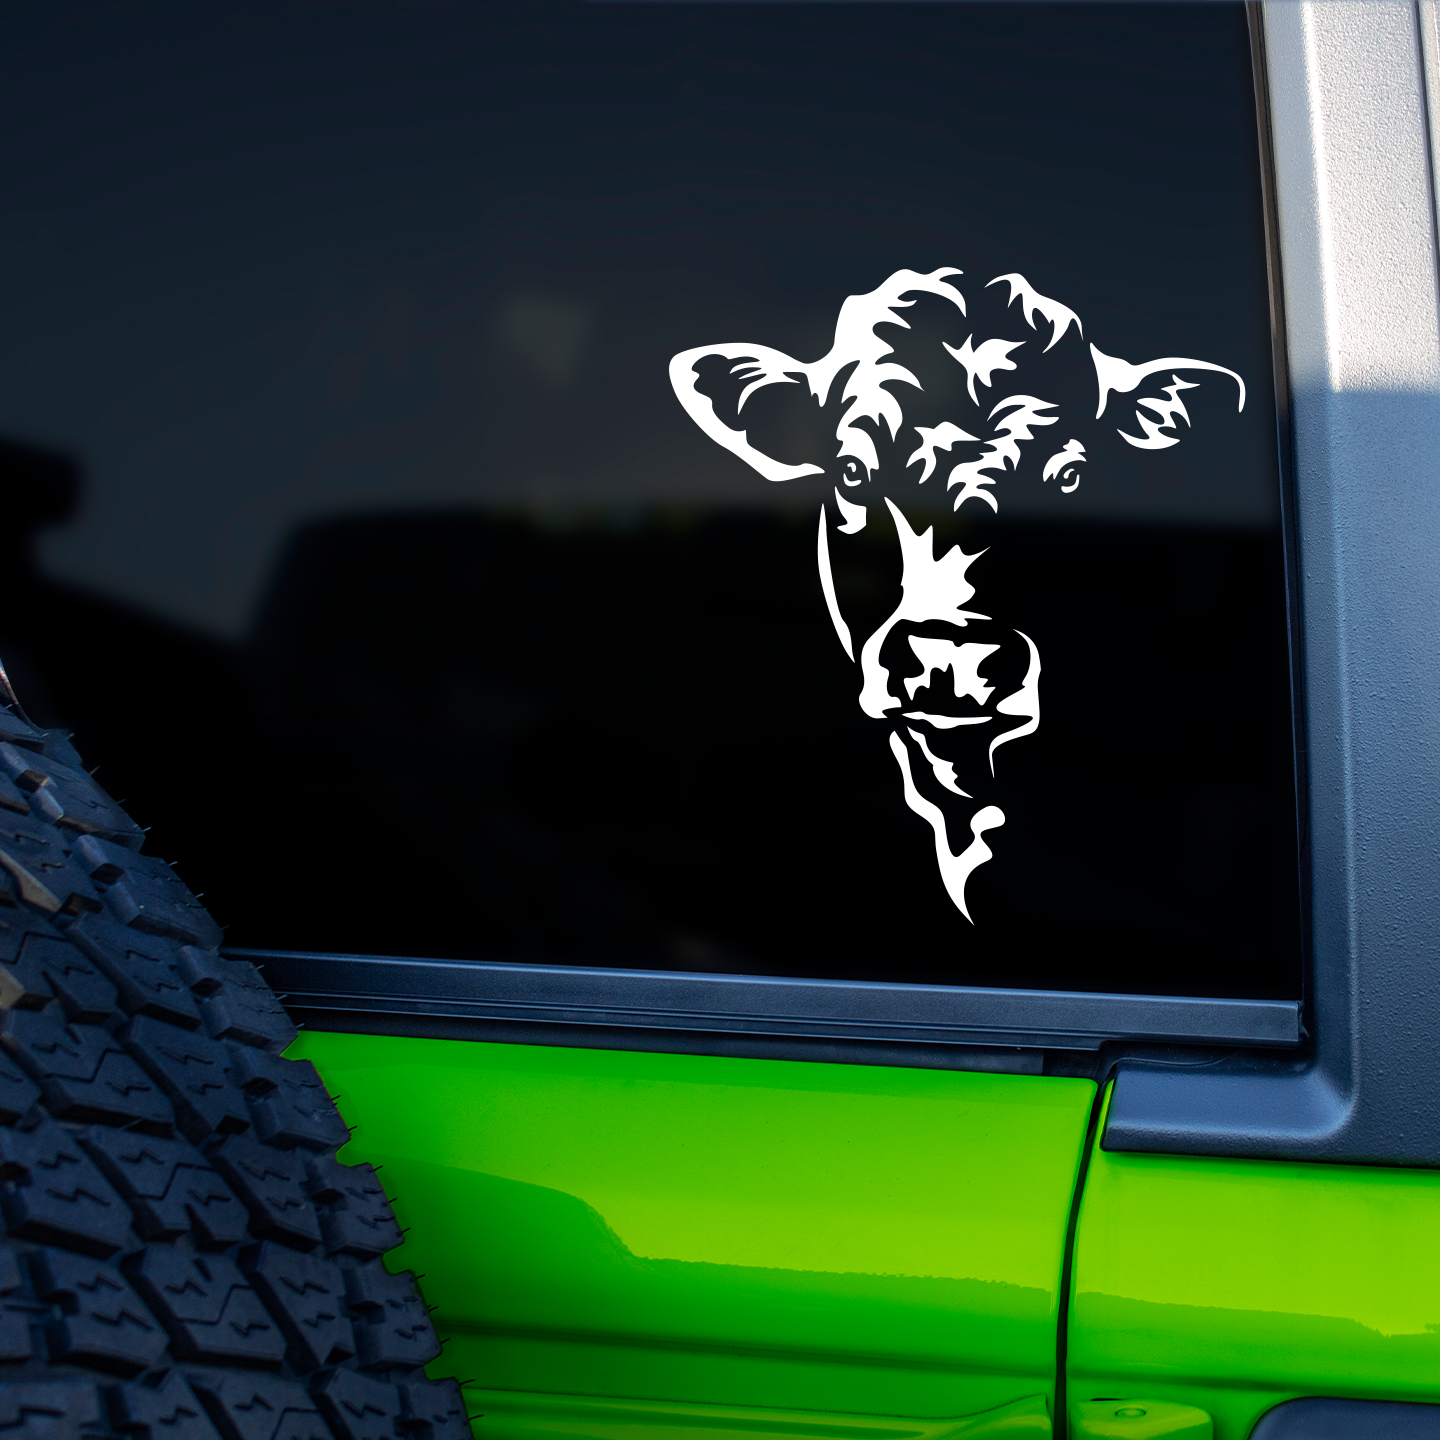 Charolais Cow Sticker